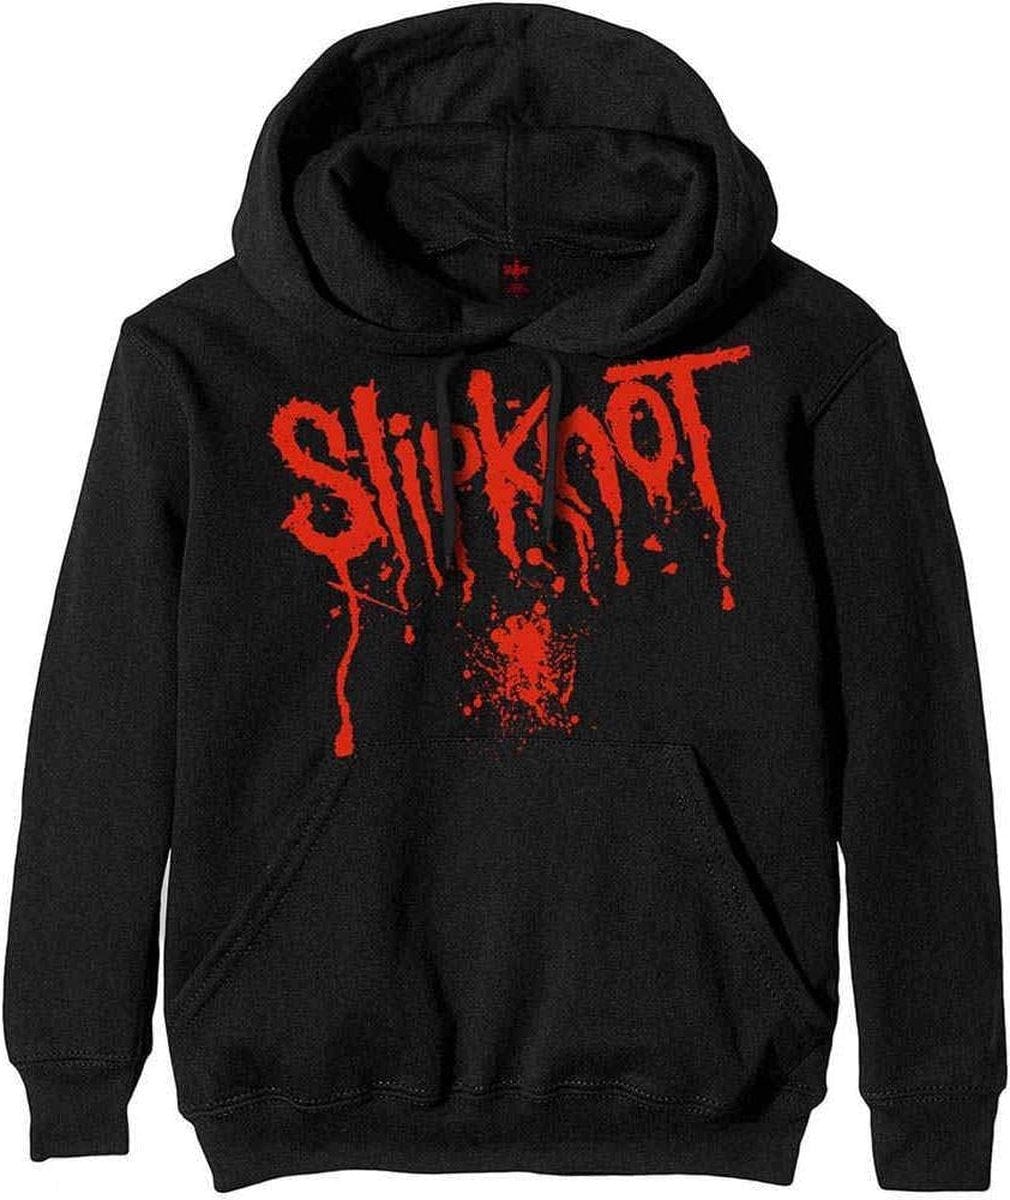 Slipknot - Splatter - Black - Small [Hoodies]